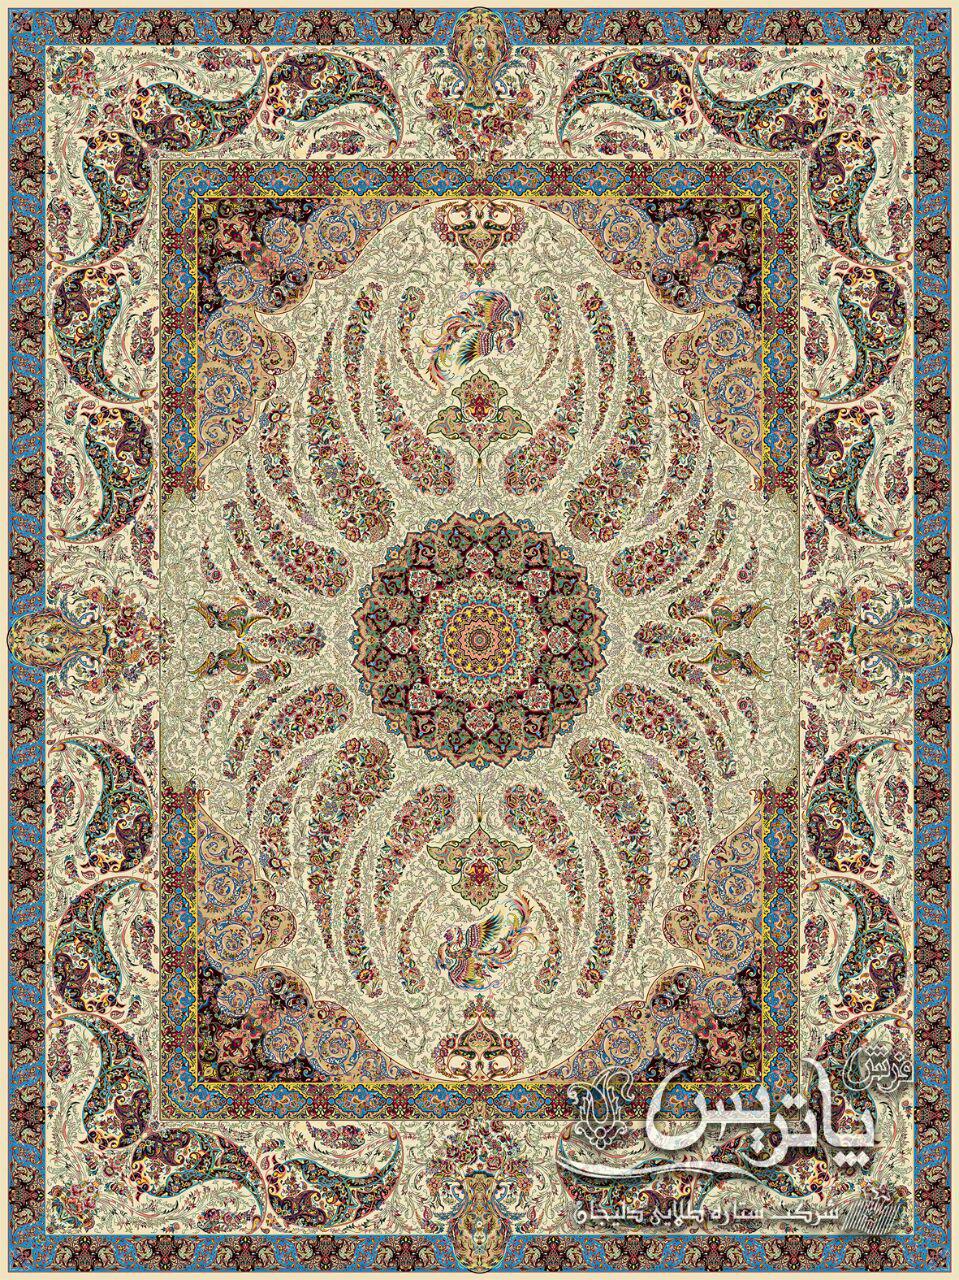 سیمرغ کرم/دنیای فرش/فرش ایرانی/فرش ماشینی/donyayfarsh